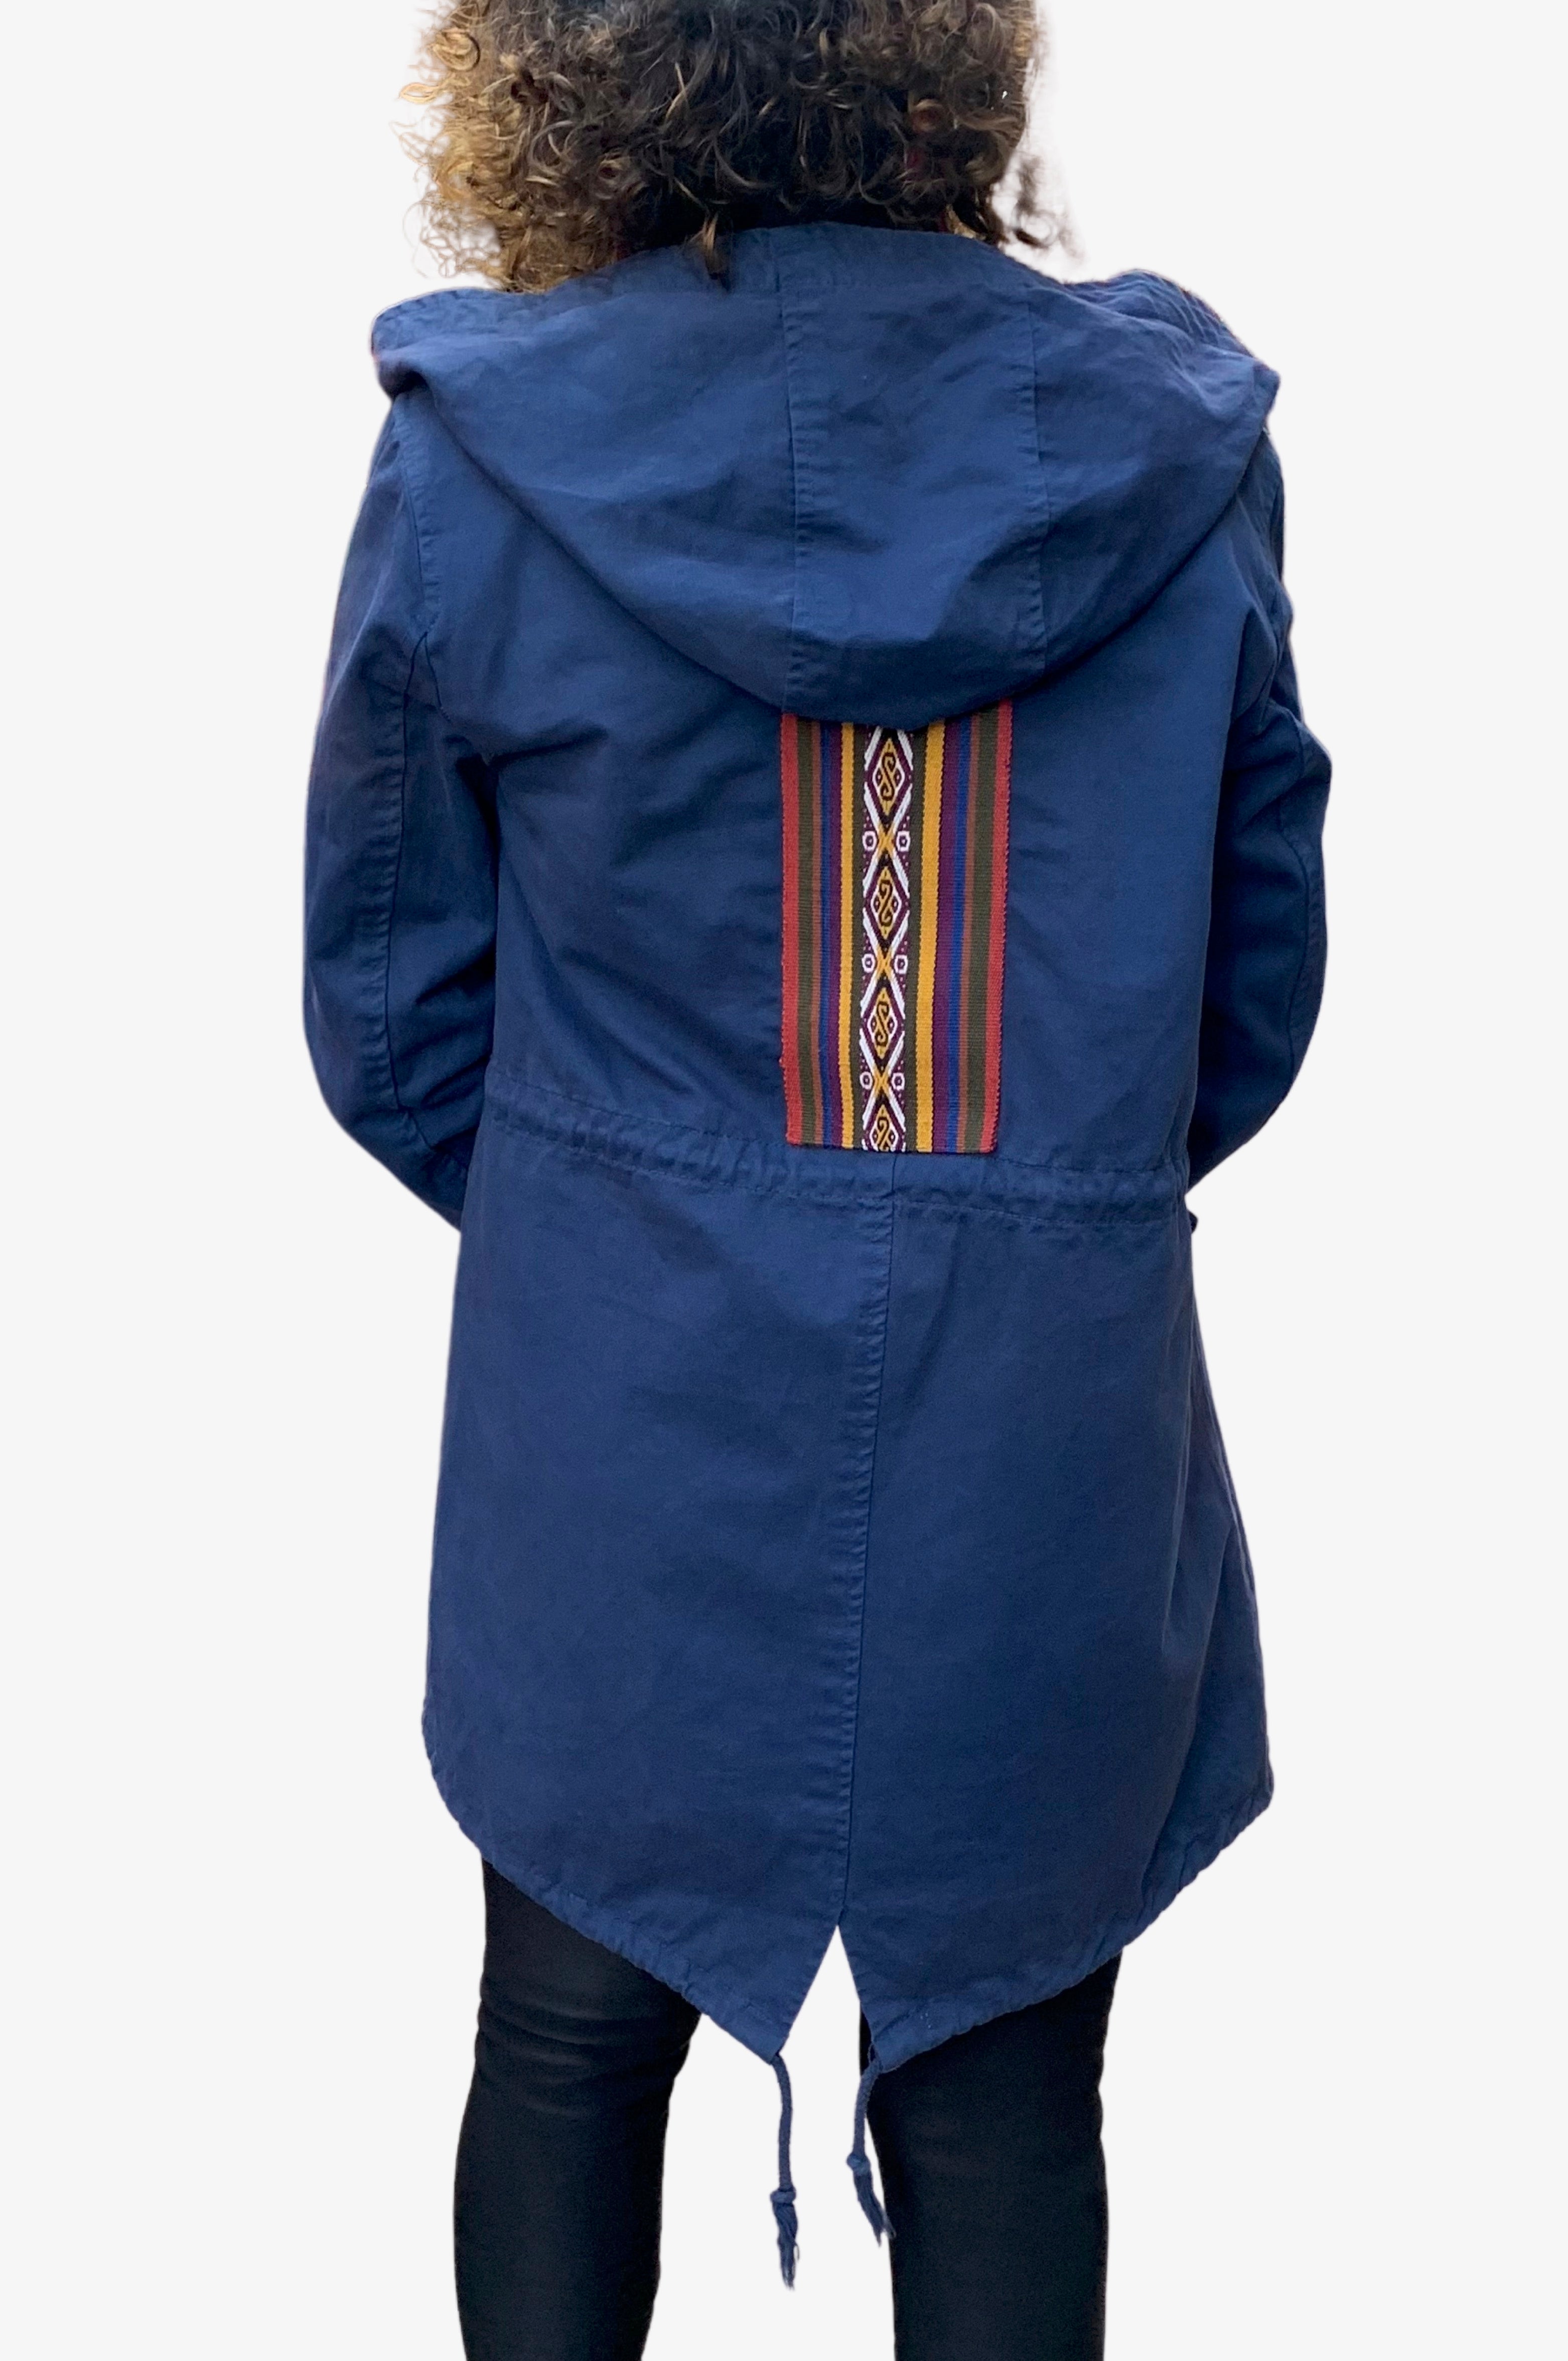 Upcycled blue parka jacket